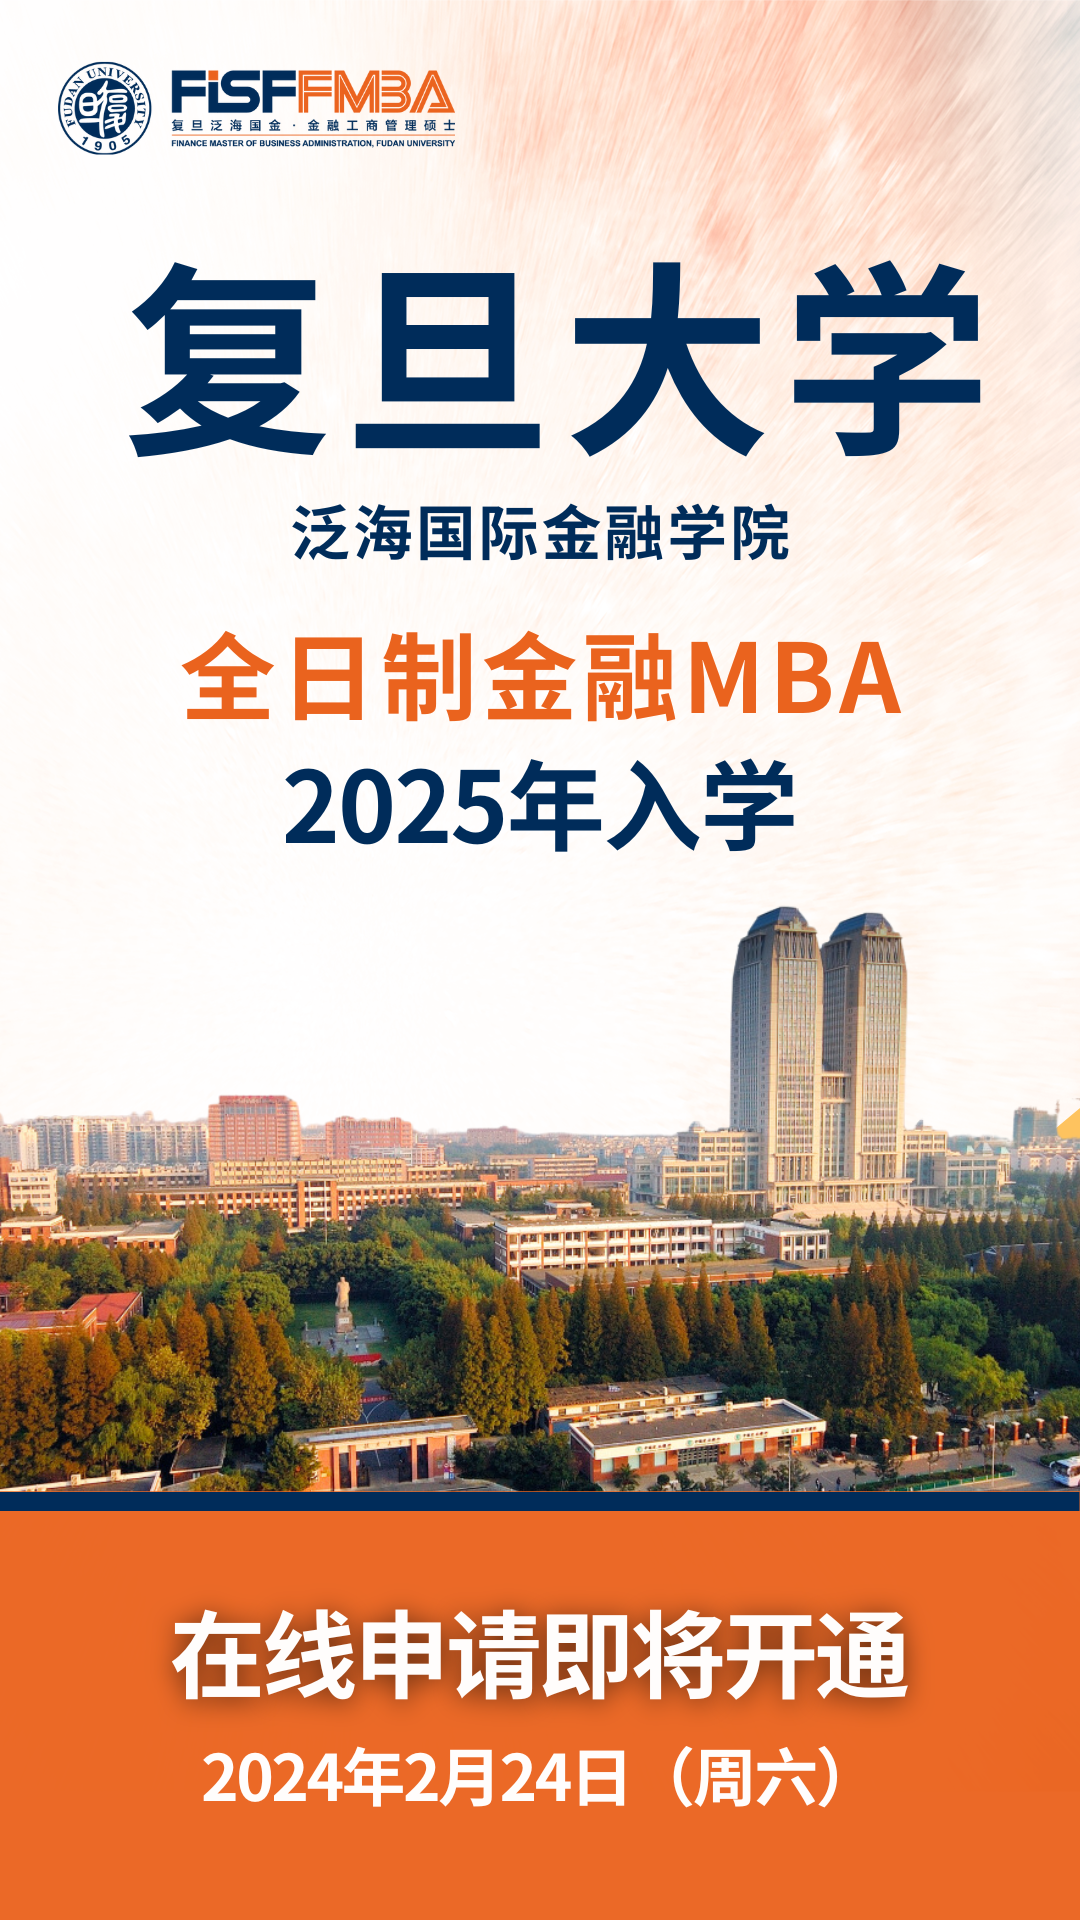 复旦大学全日制金融MBA 2025级入学申请系统即将开放 | FMBA